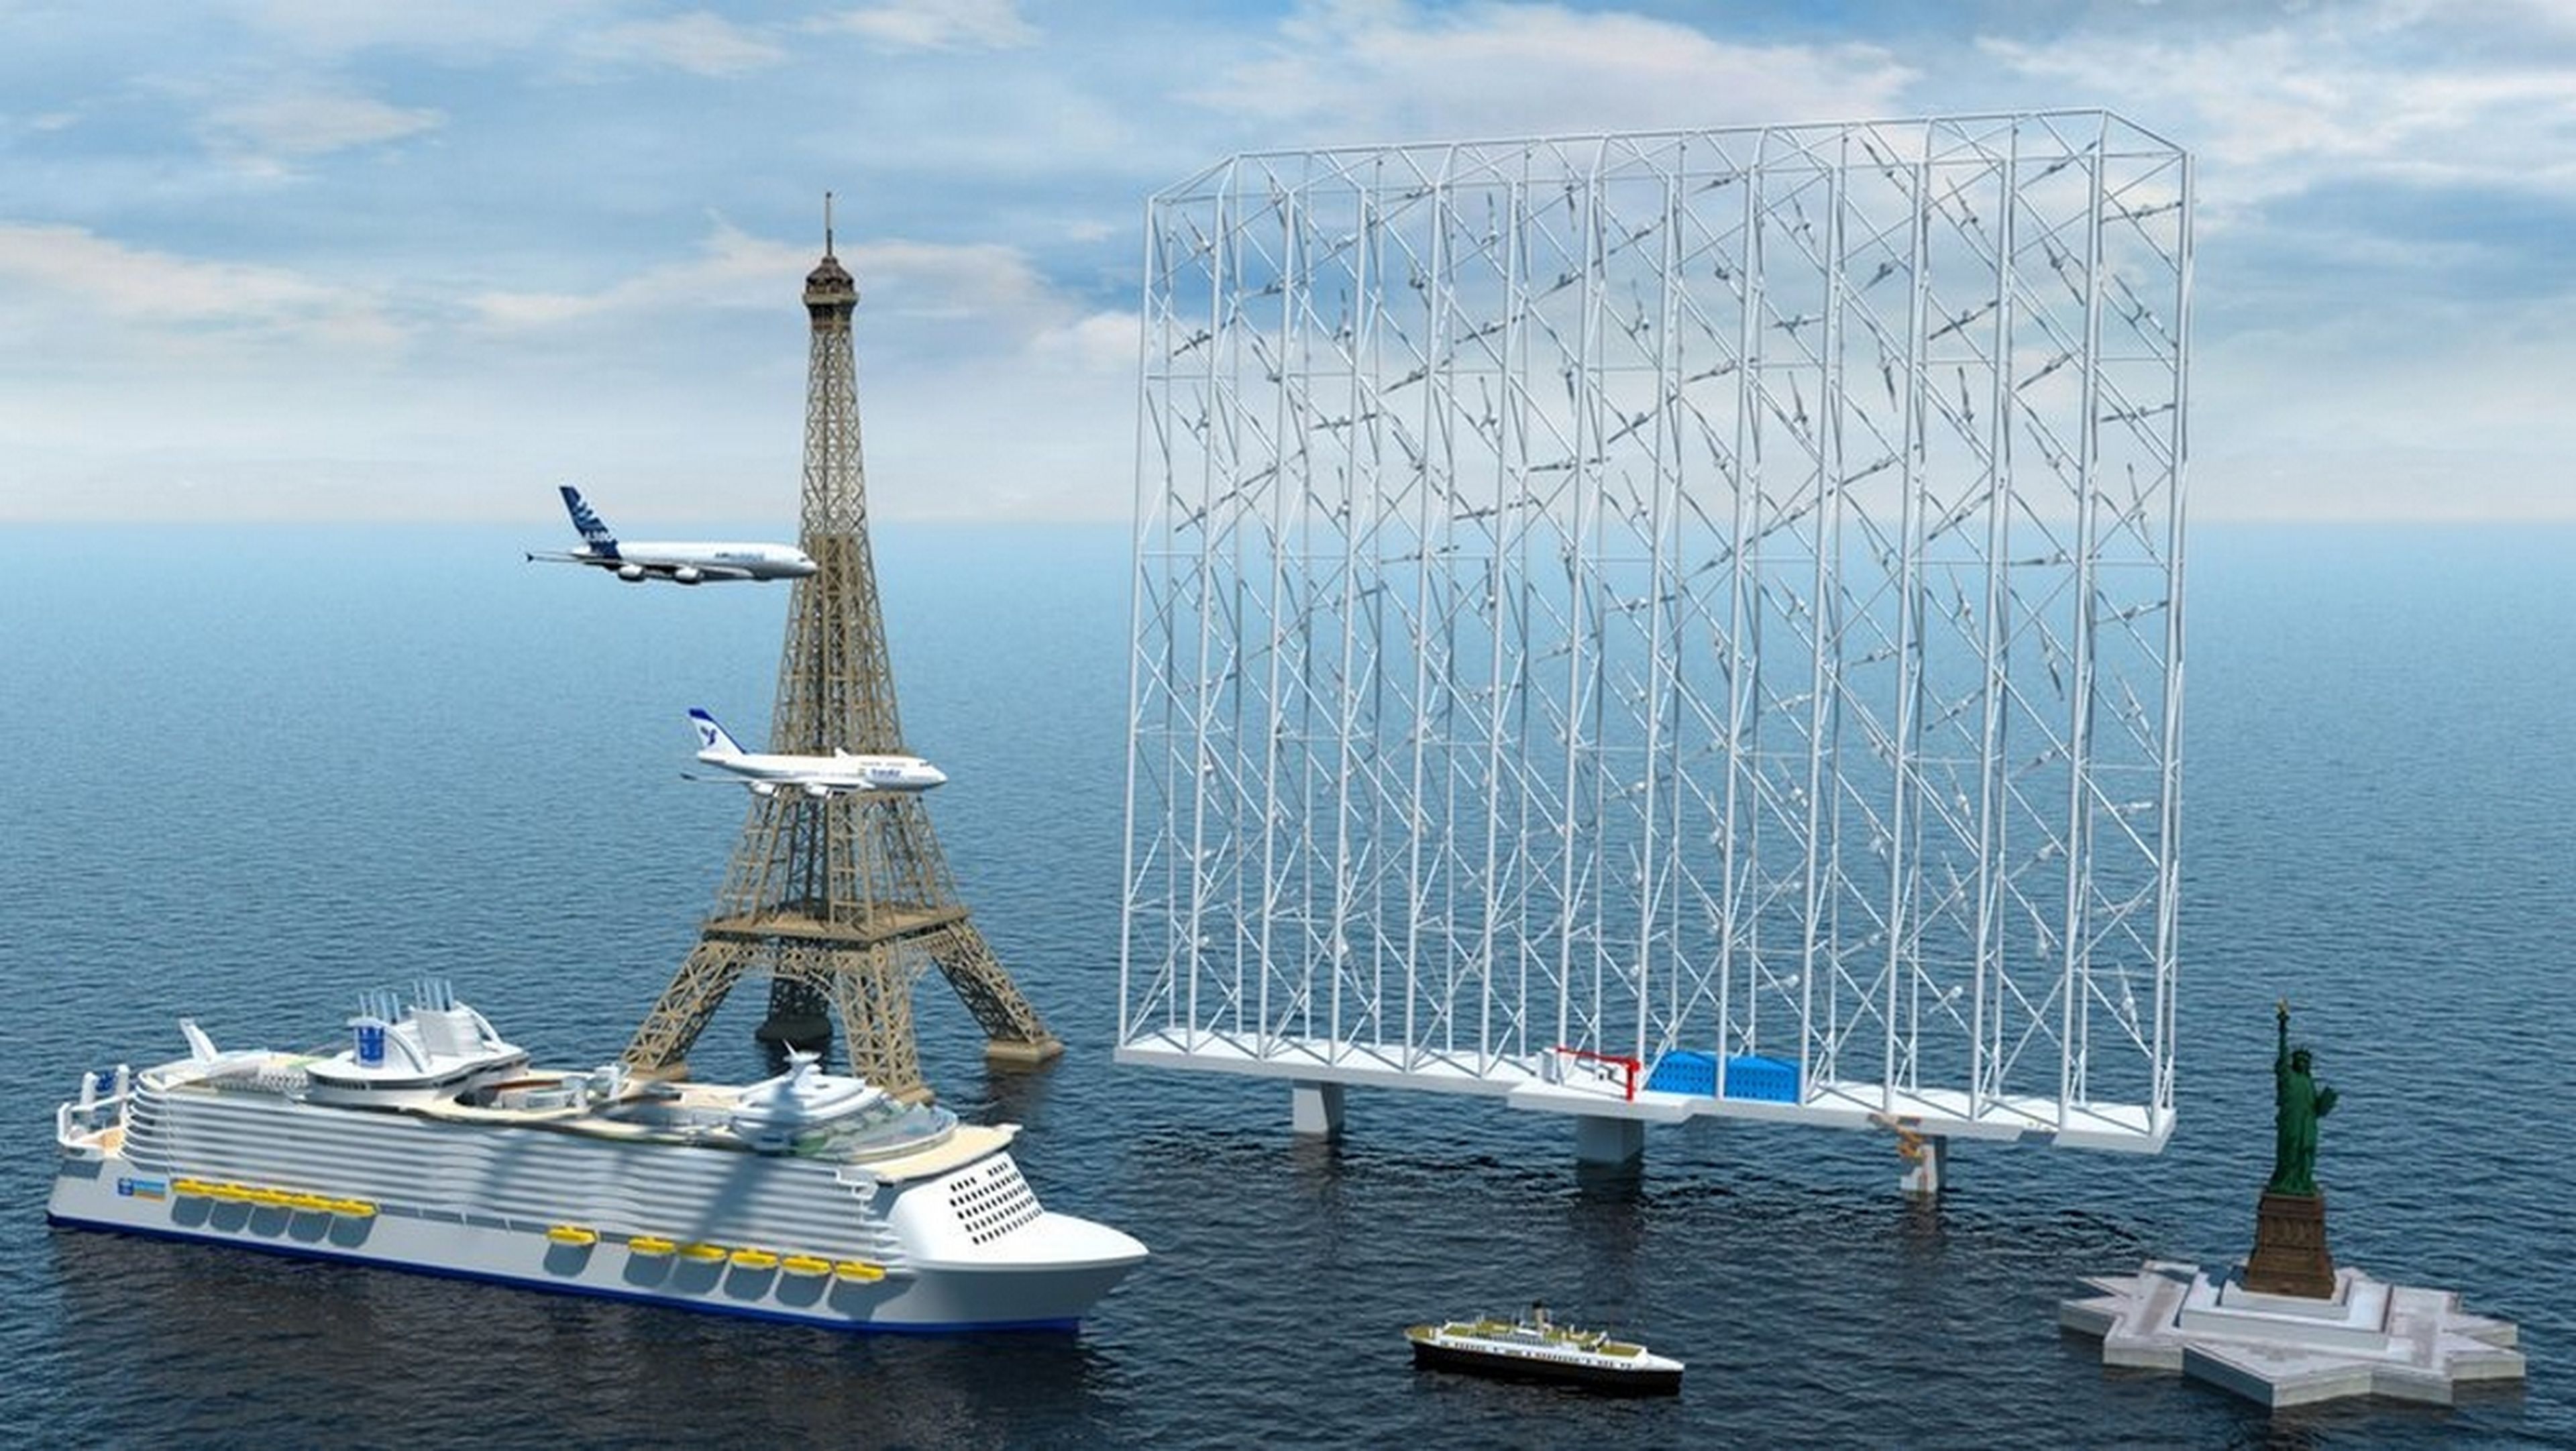 Este enorme atrapavientos más alto que la Torre Eiffel, producirá electricidad para 80.000 hogares